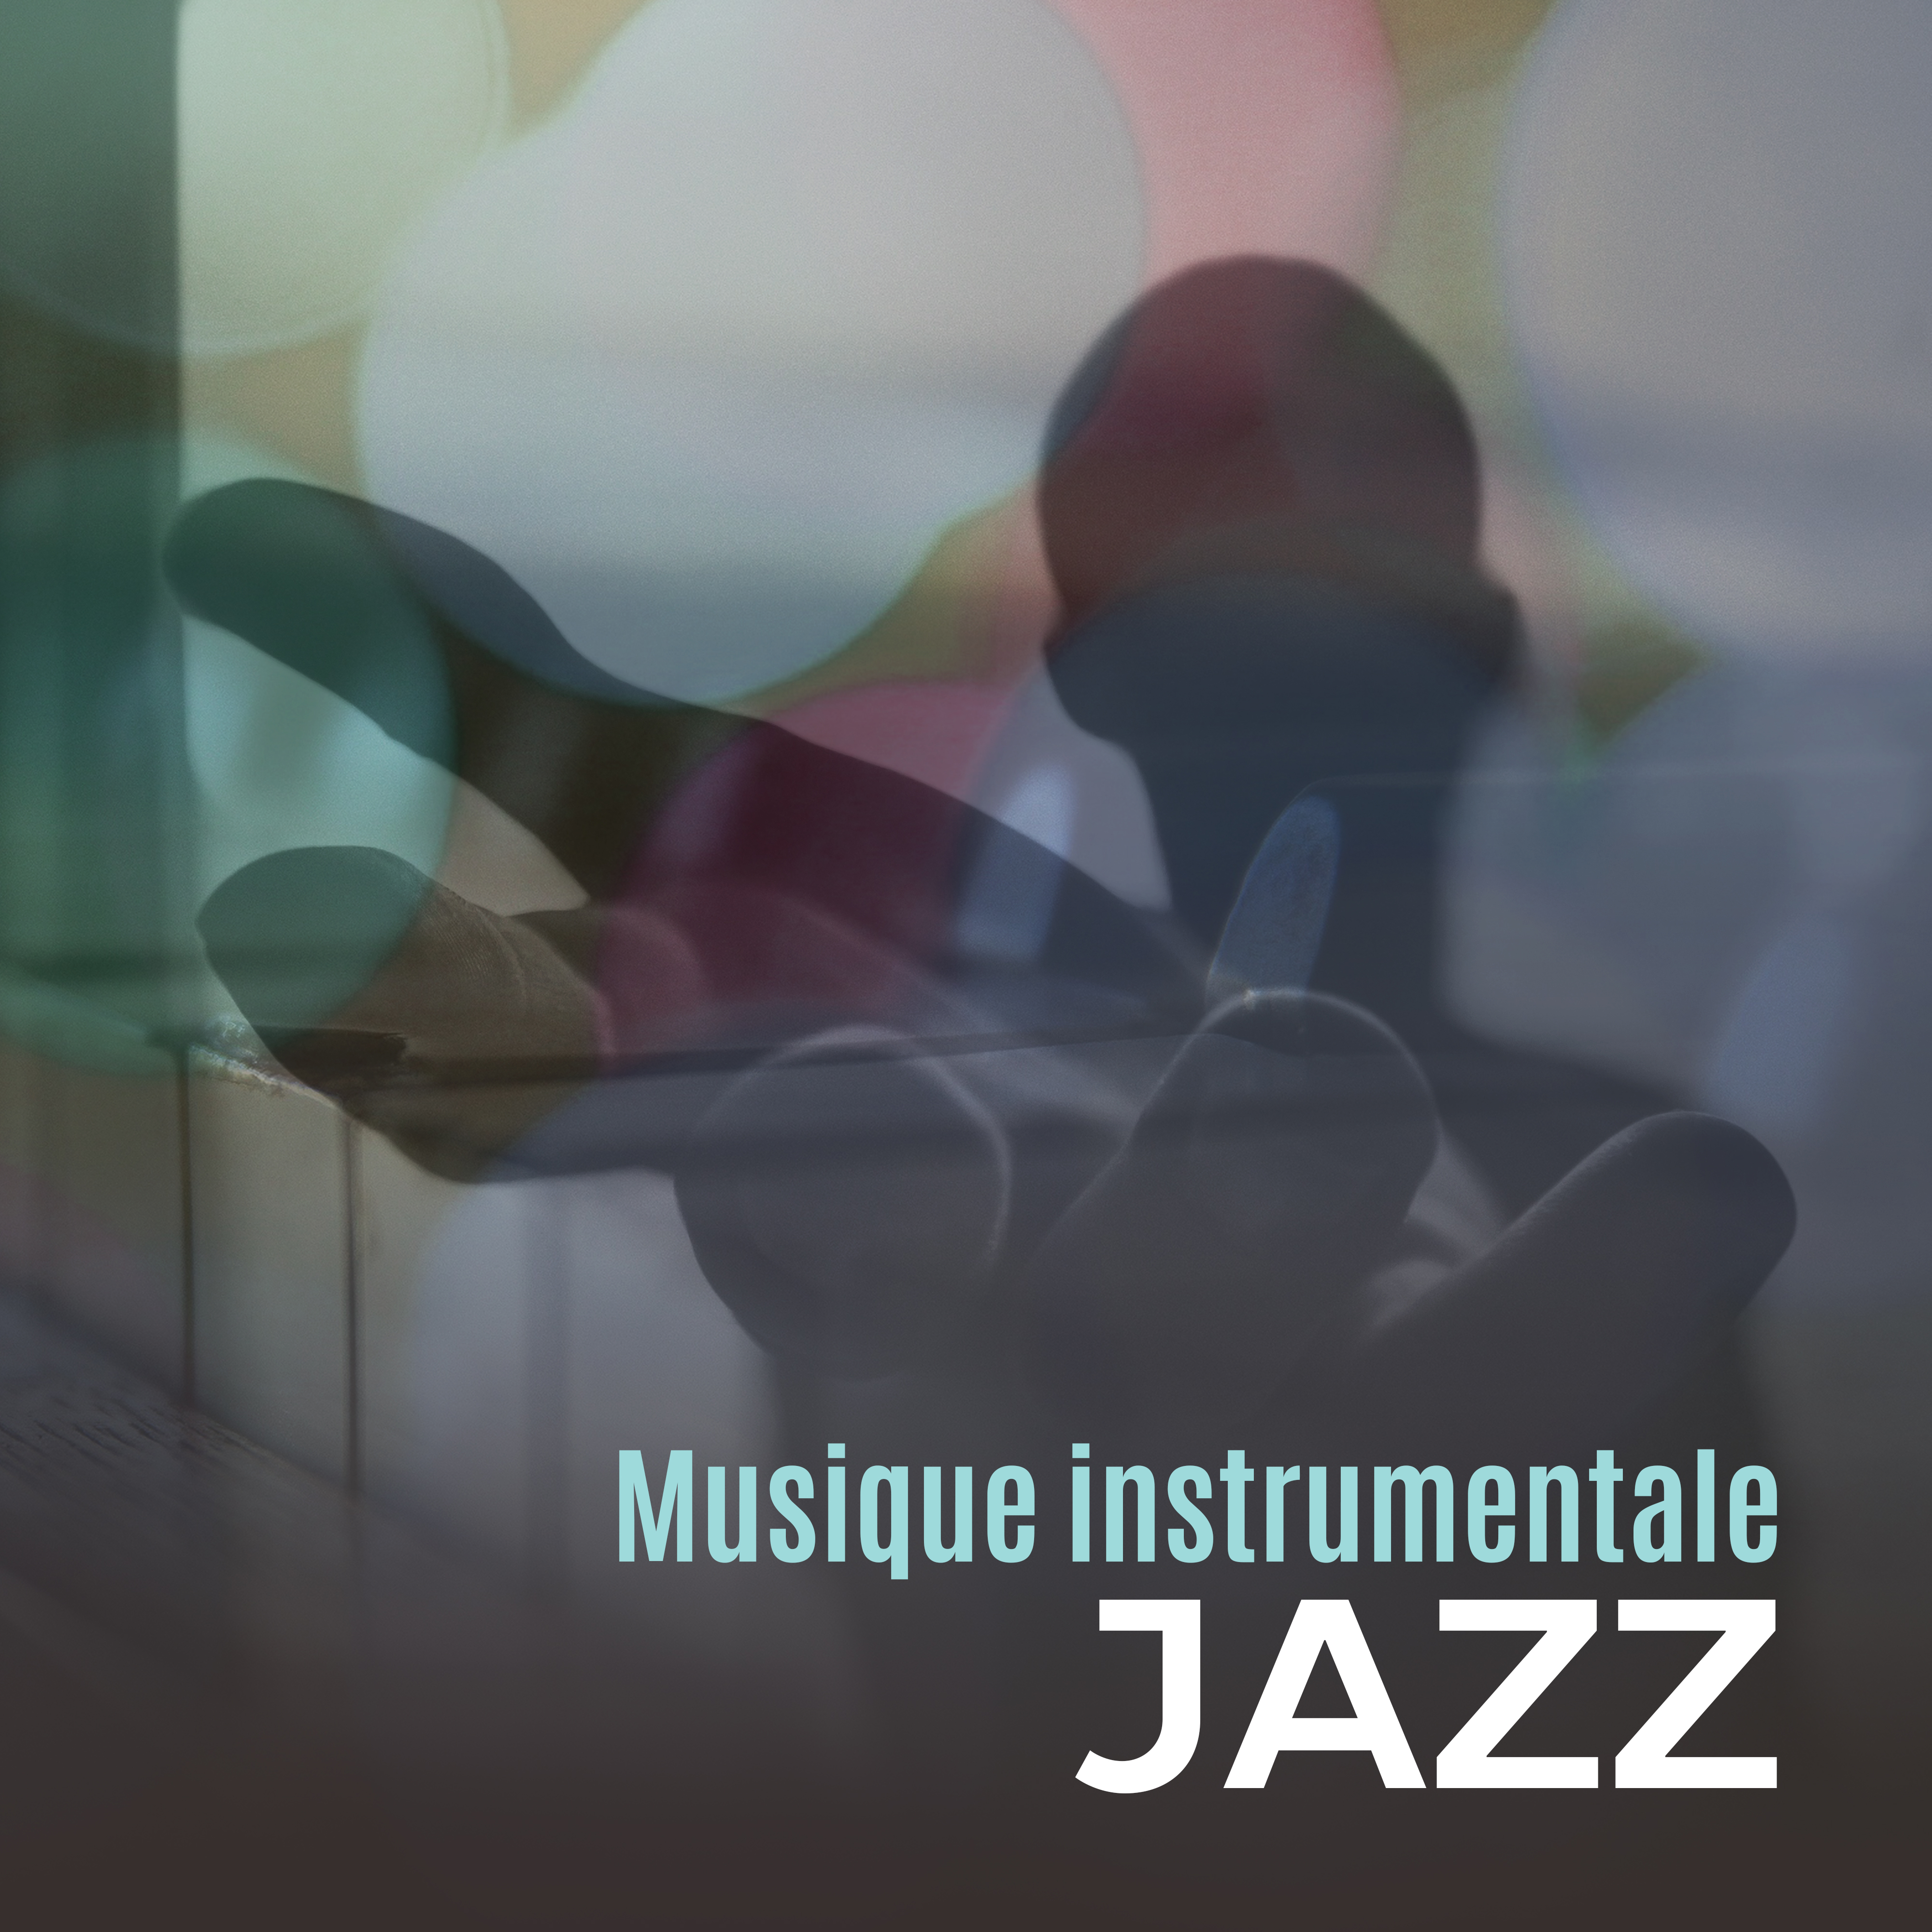 Musique instrumentale jazz – **** jazz, instrumentale musique, jazz lounge